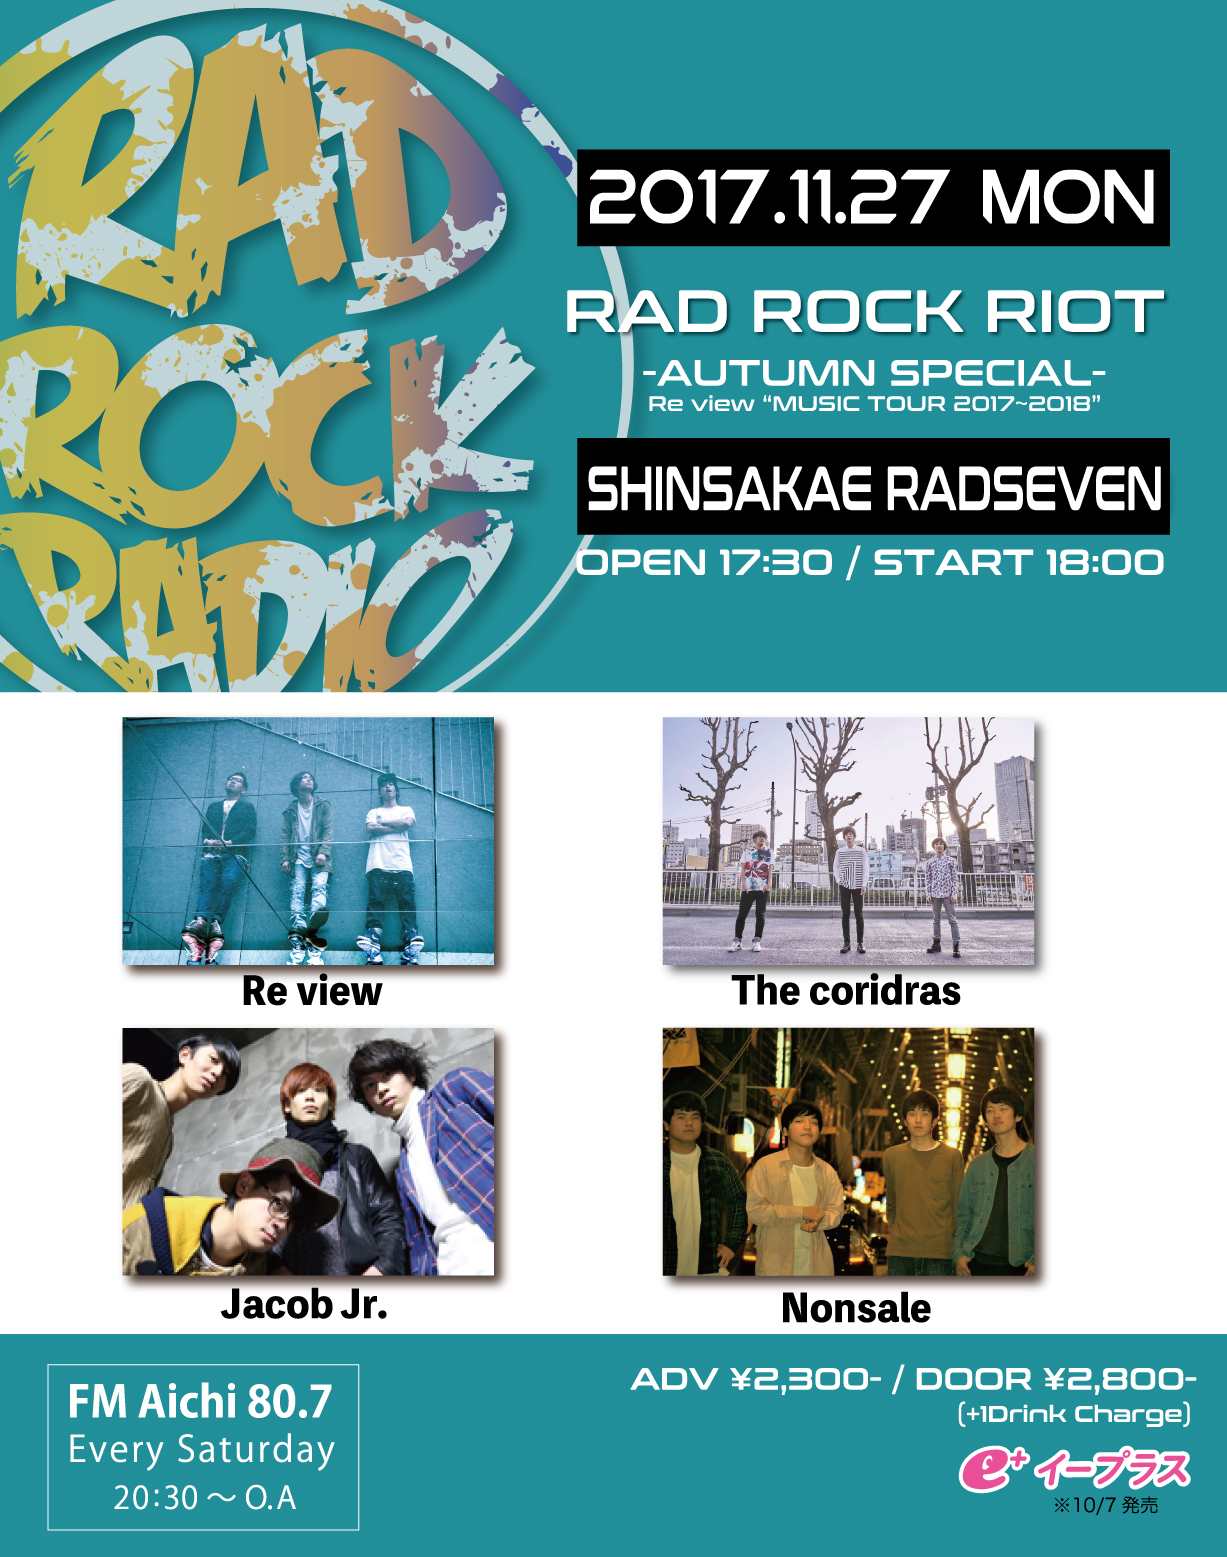 【RAD ROCK RIOT~AUTUMN SPECIAL~ Re view "MUSIC TOUR 2017-2018"】